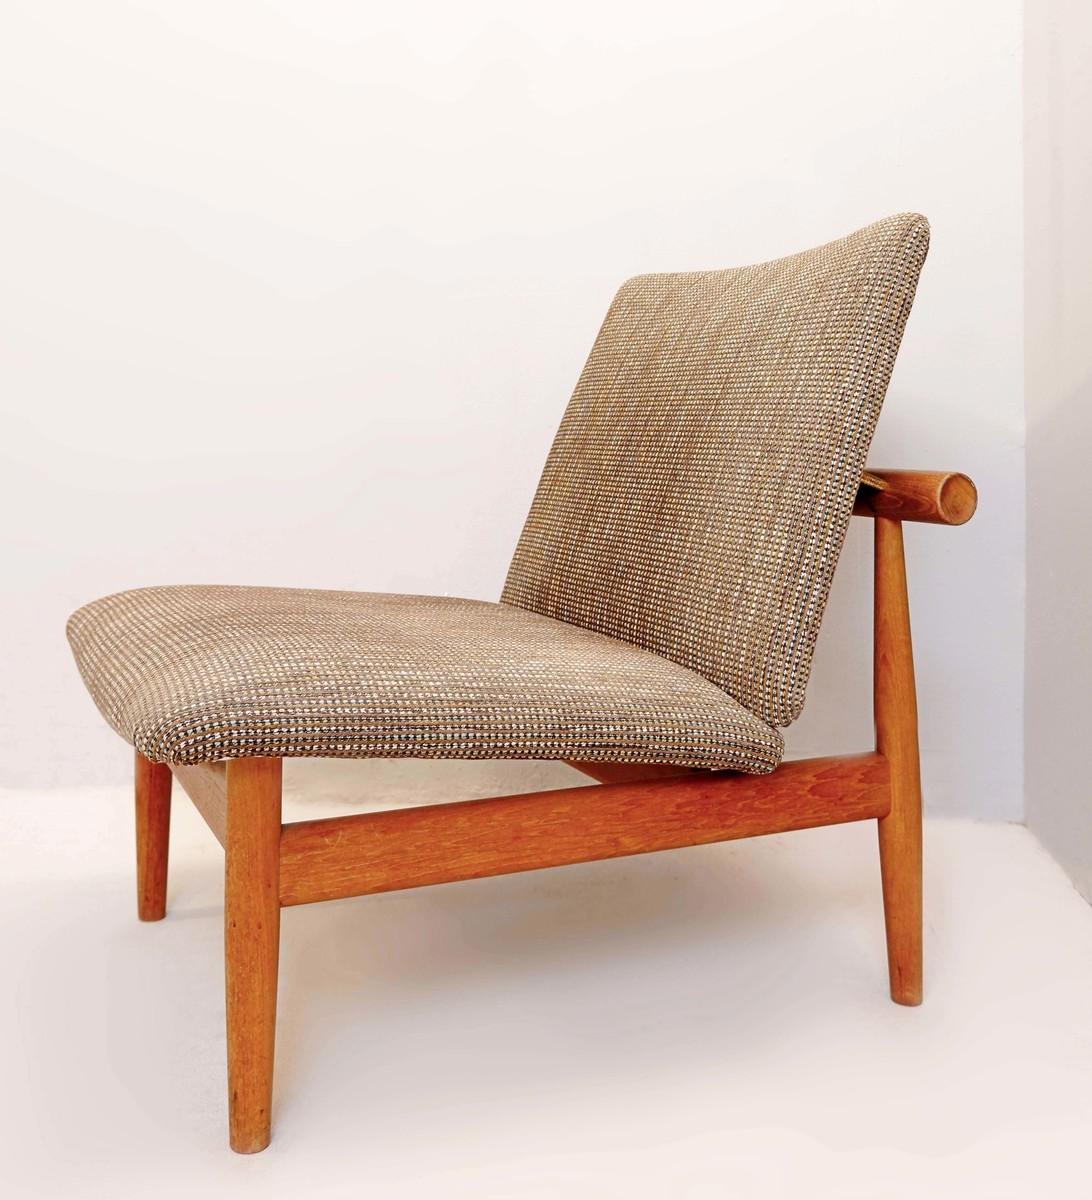 Mid-20th Century Finn Juhl 'Japan' Chair, Model 137 for France & Søn, 1960s